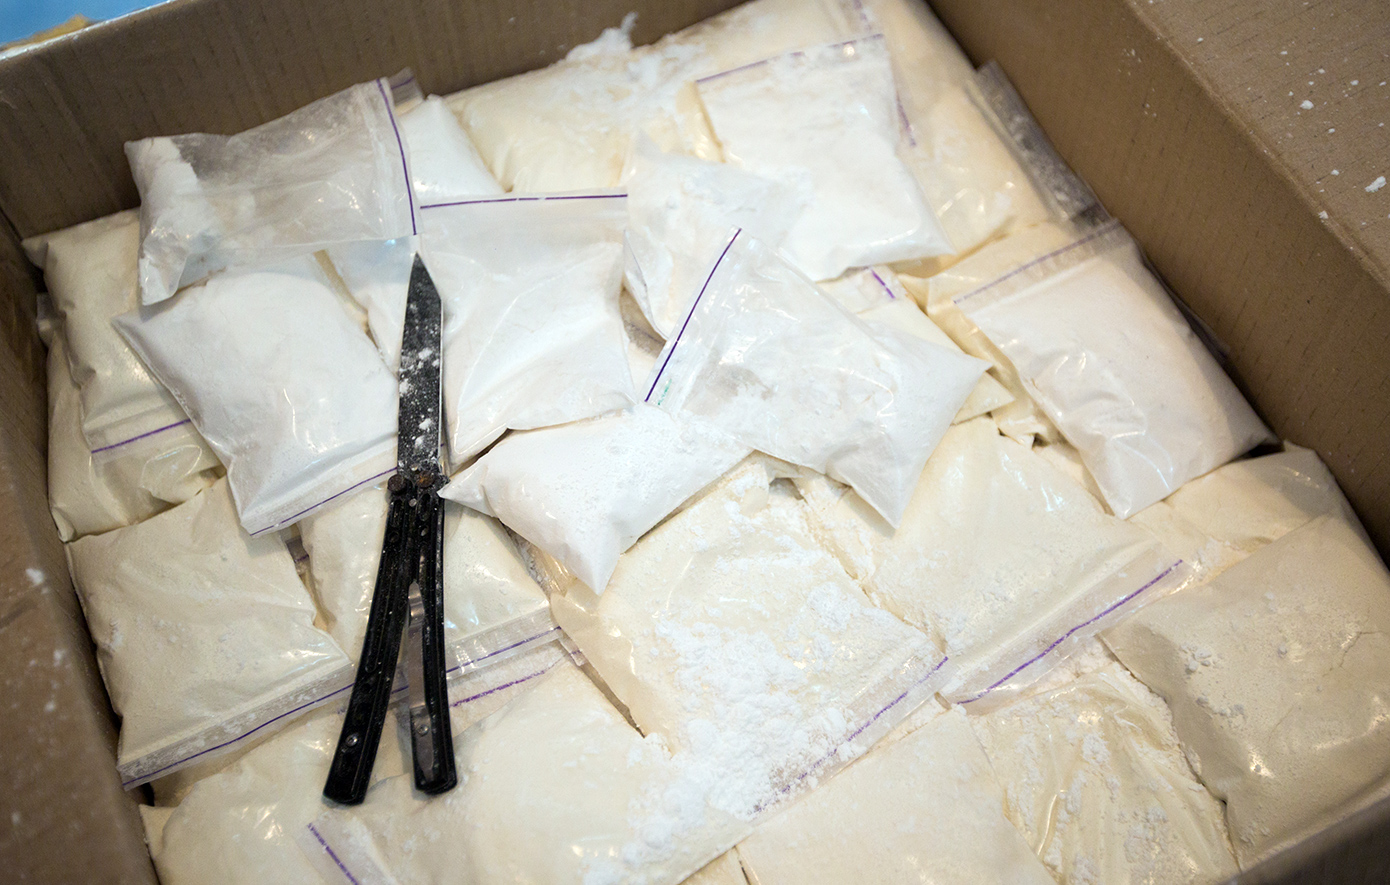 Περίπου 300 κιλά κοκαΐνης σε κοντέινερ με γαρίδες στο λιμάνι του Πειραιά &#8211; Προορισμός τους η Αλβανία, συνελήφθη ναρκέμπορος